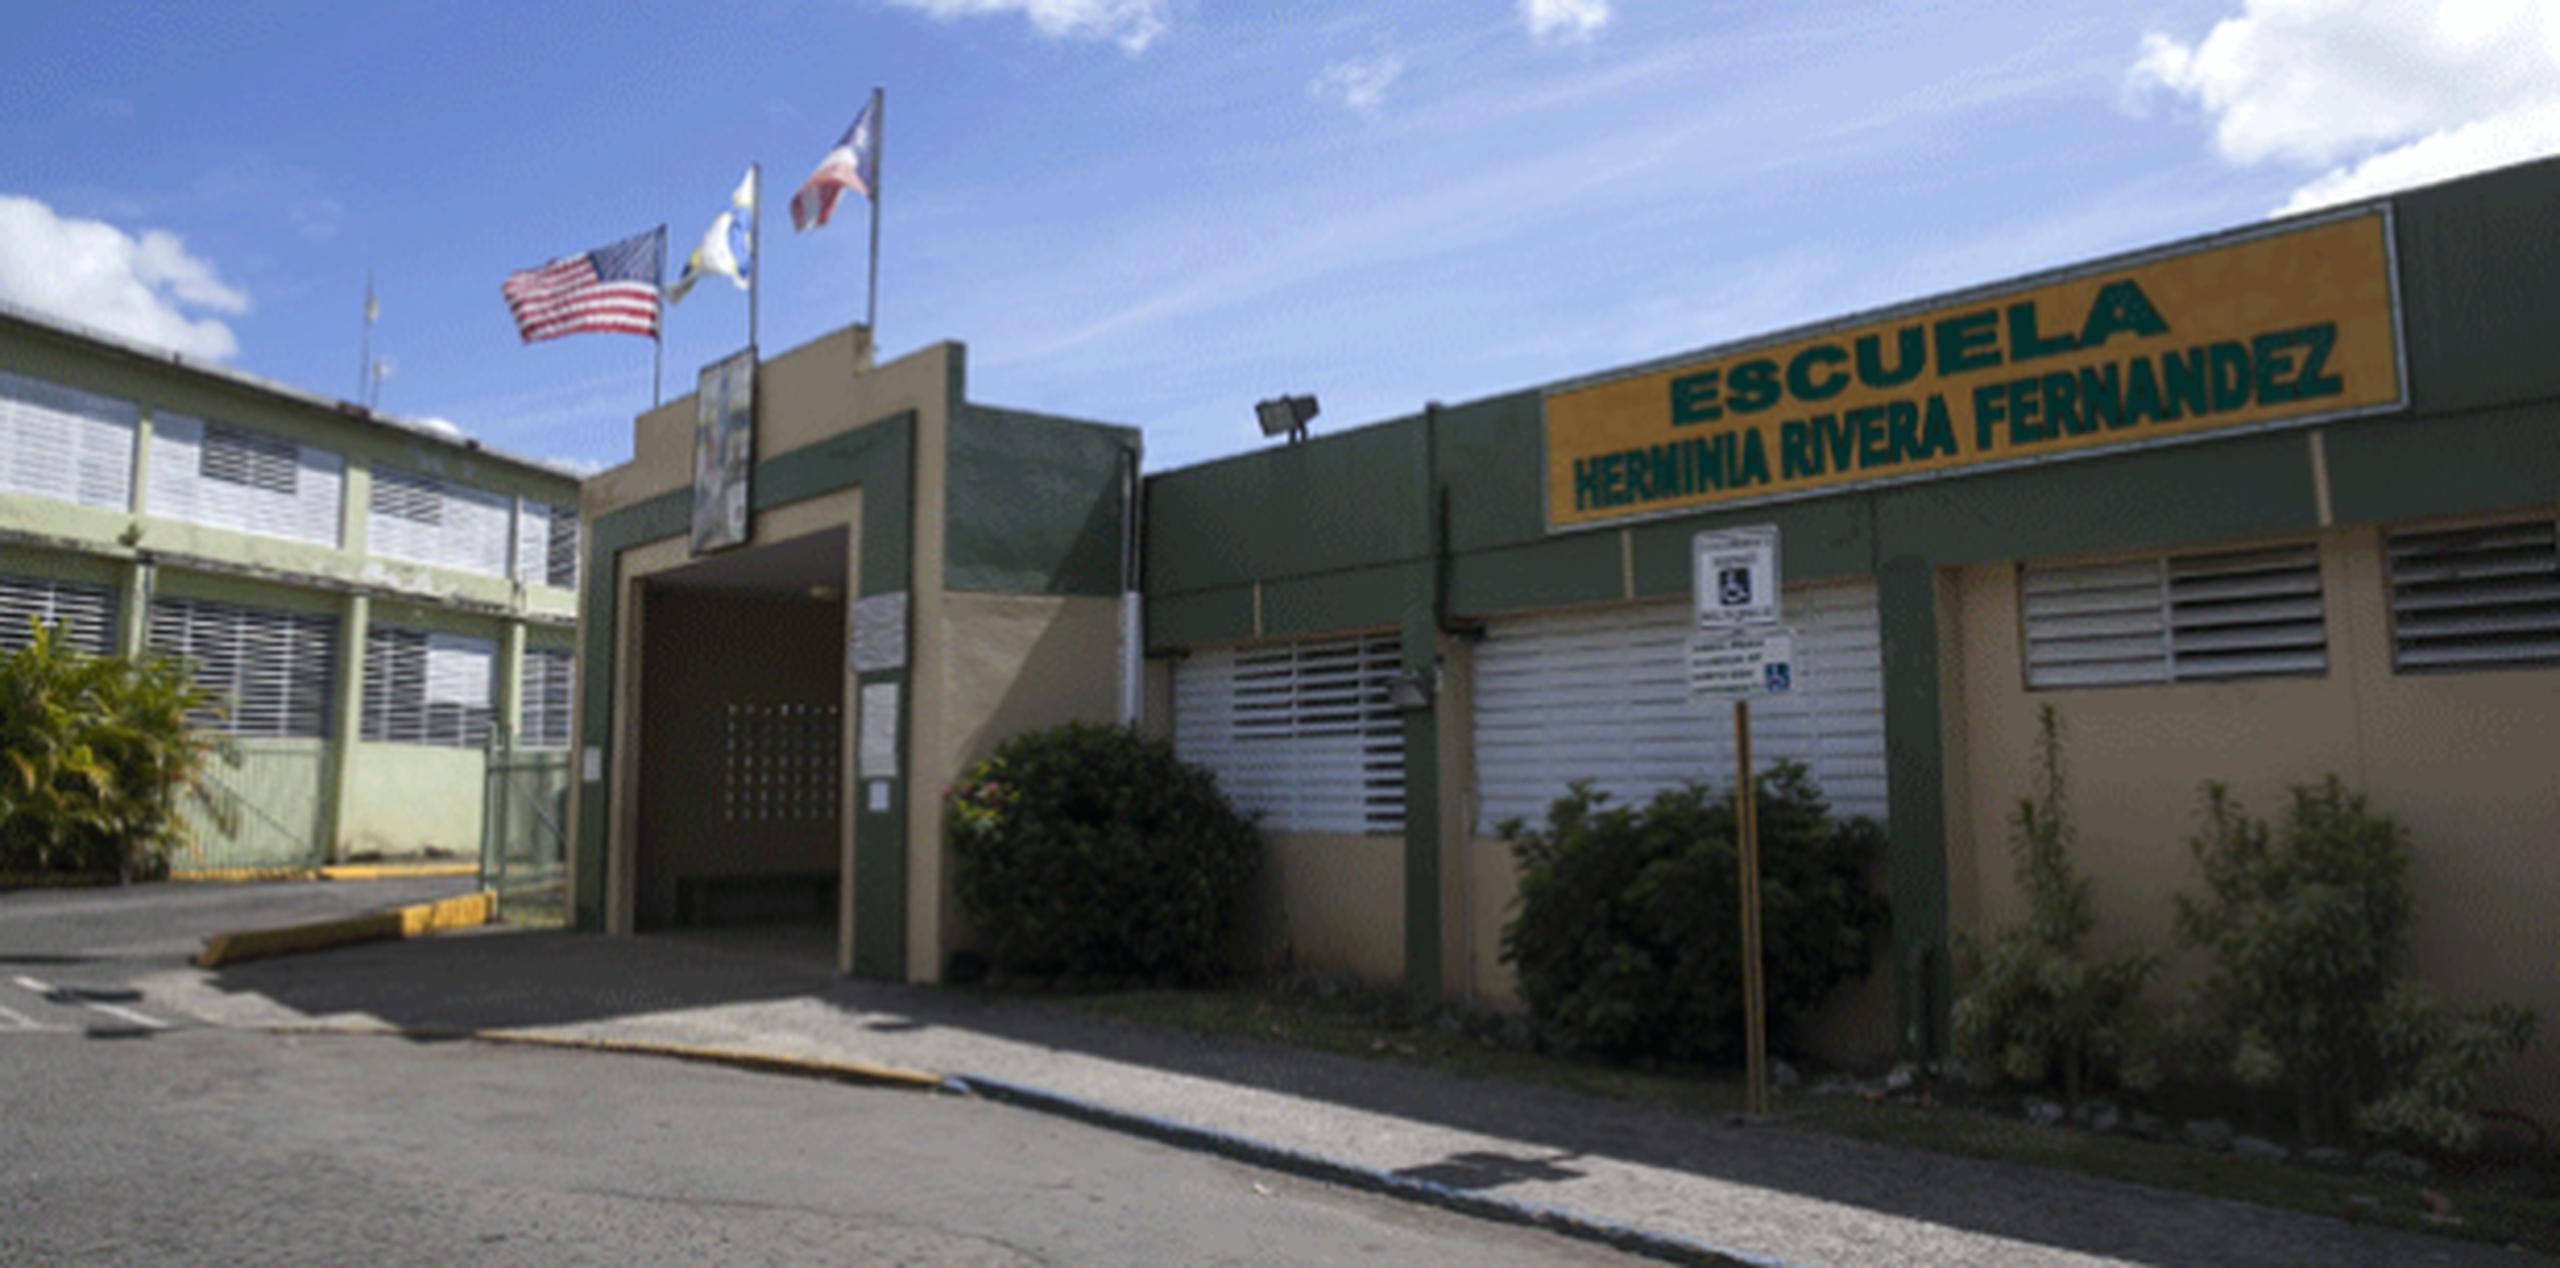 La escuela elemental Herminia Rivera, en Bayamón, tenía problemas con las bombas del pozo séptico, entre otros inconvenientes. (ARCHIVO)